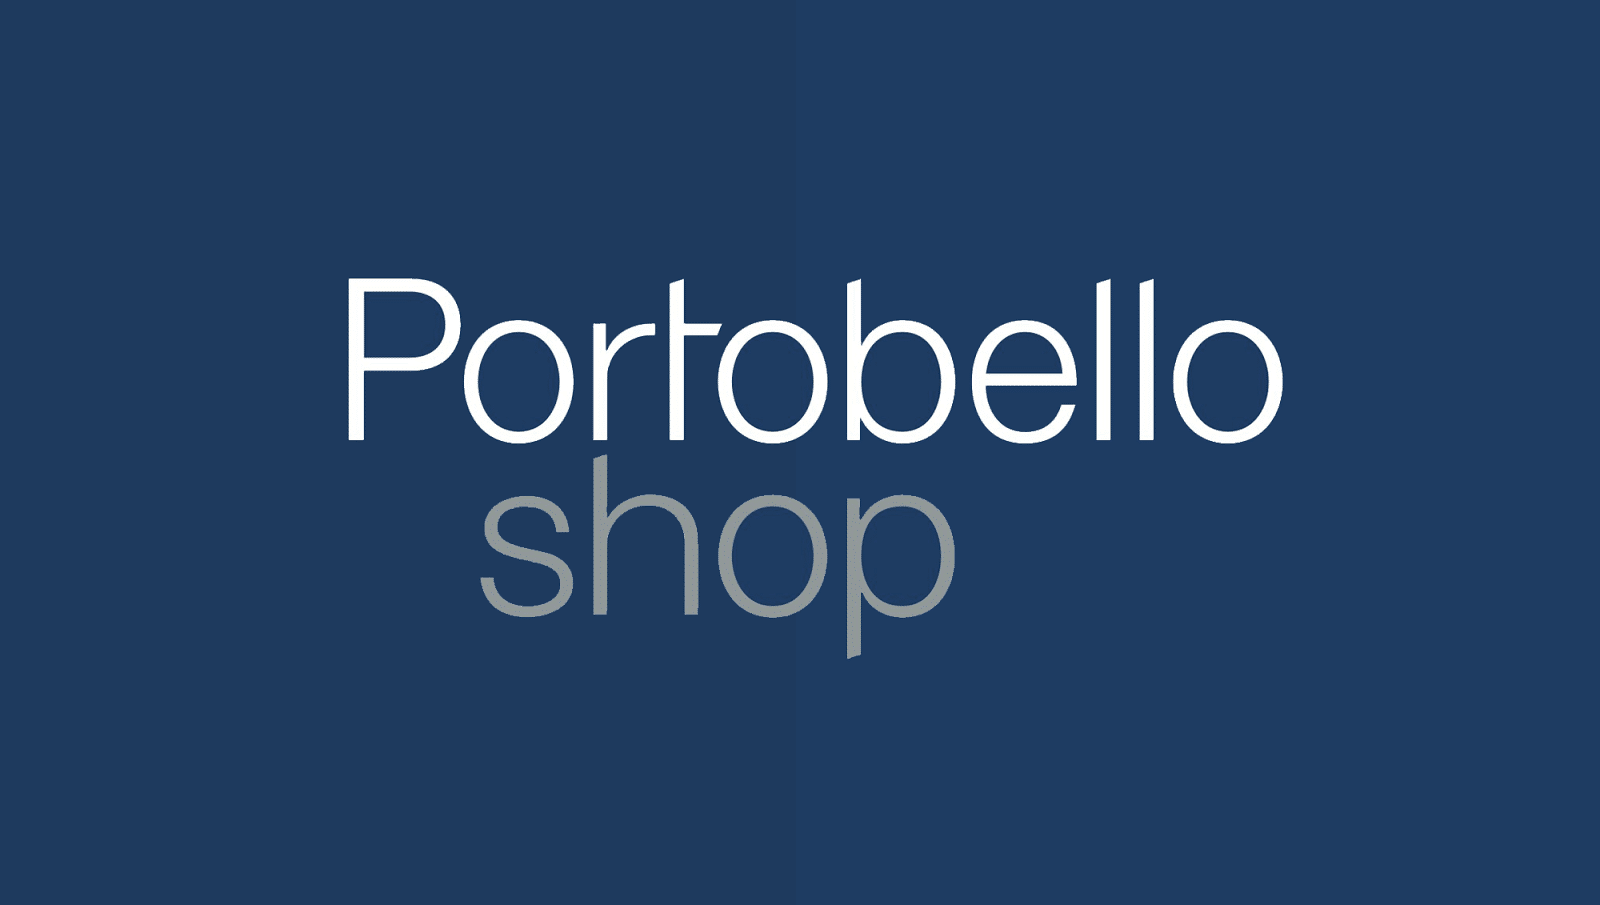 PortoBello - o que é endomarketing